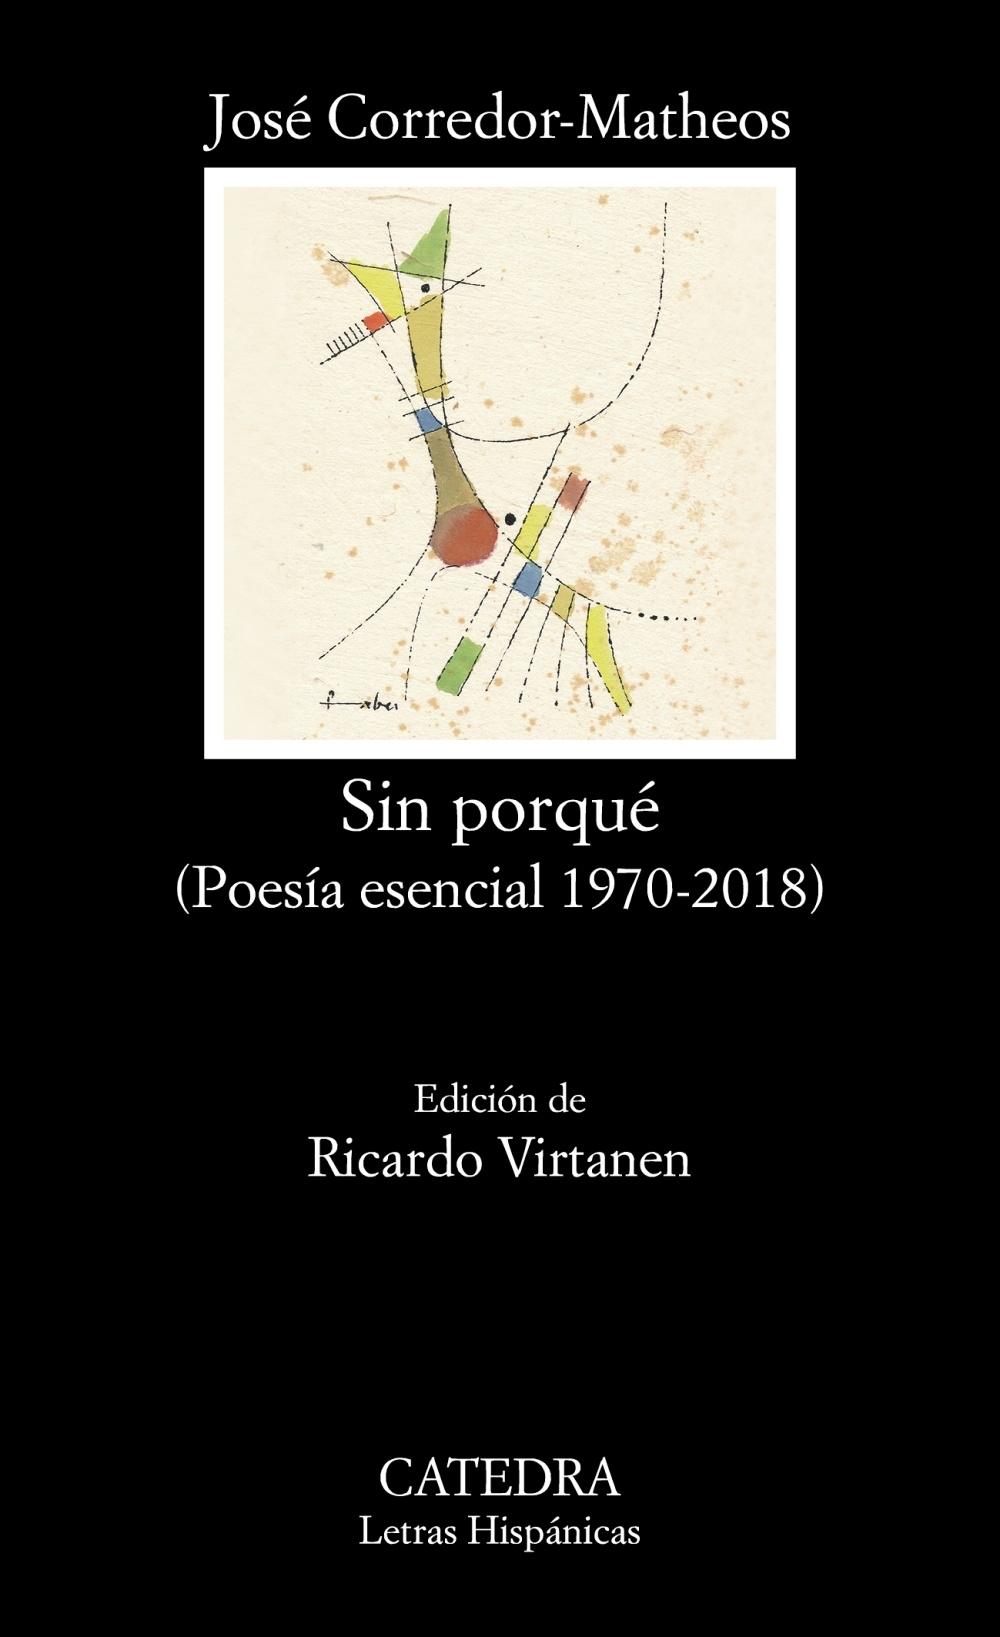 Sin porqué "(Poesía esencial, 1970-2018)"